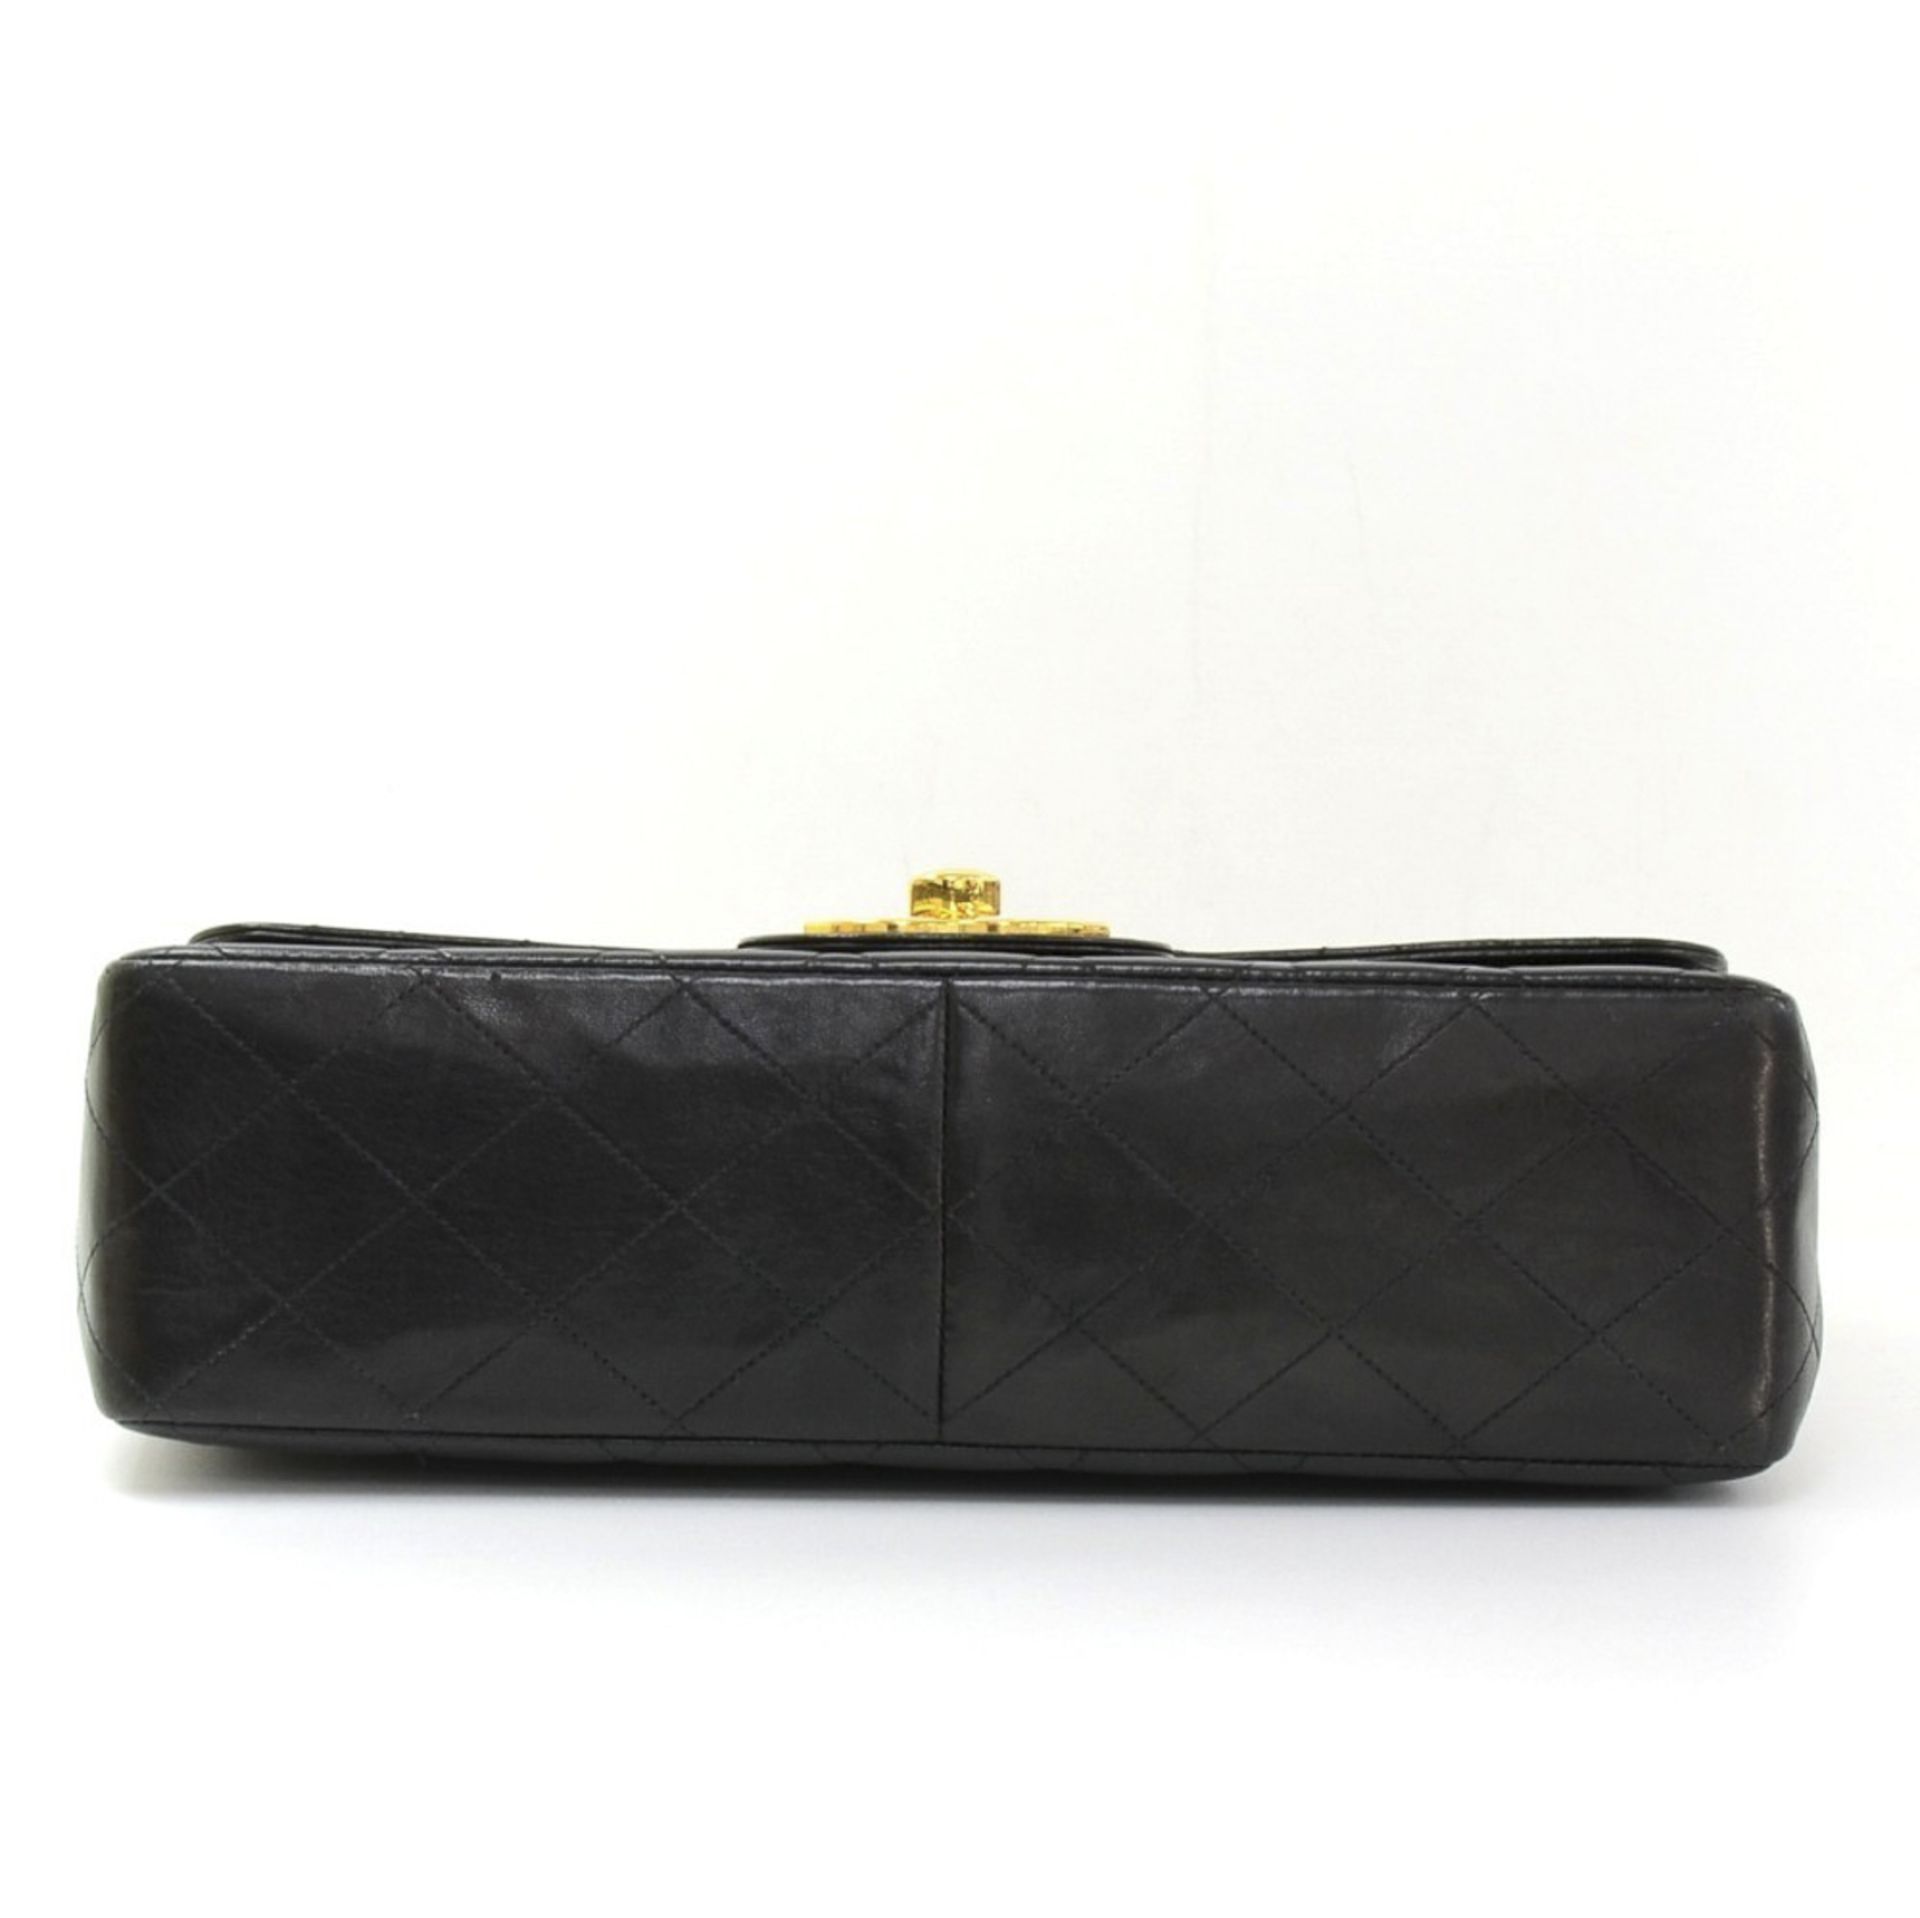 Chanel, Jumbo XL Flap Bag - Image 5 of 12